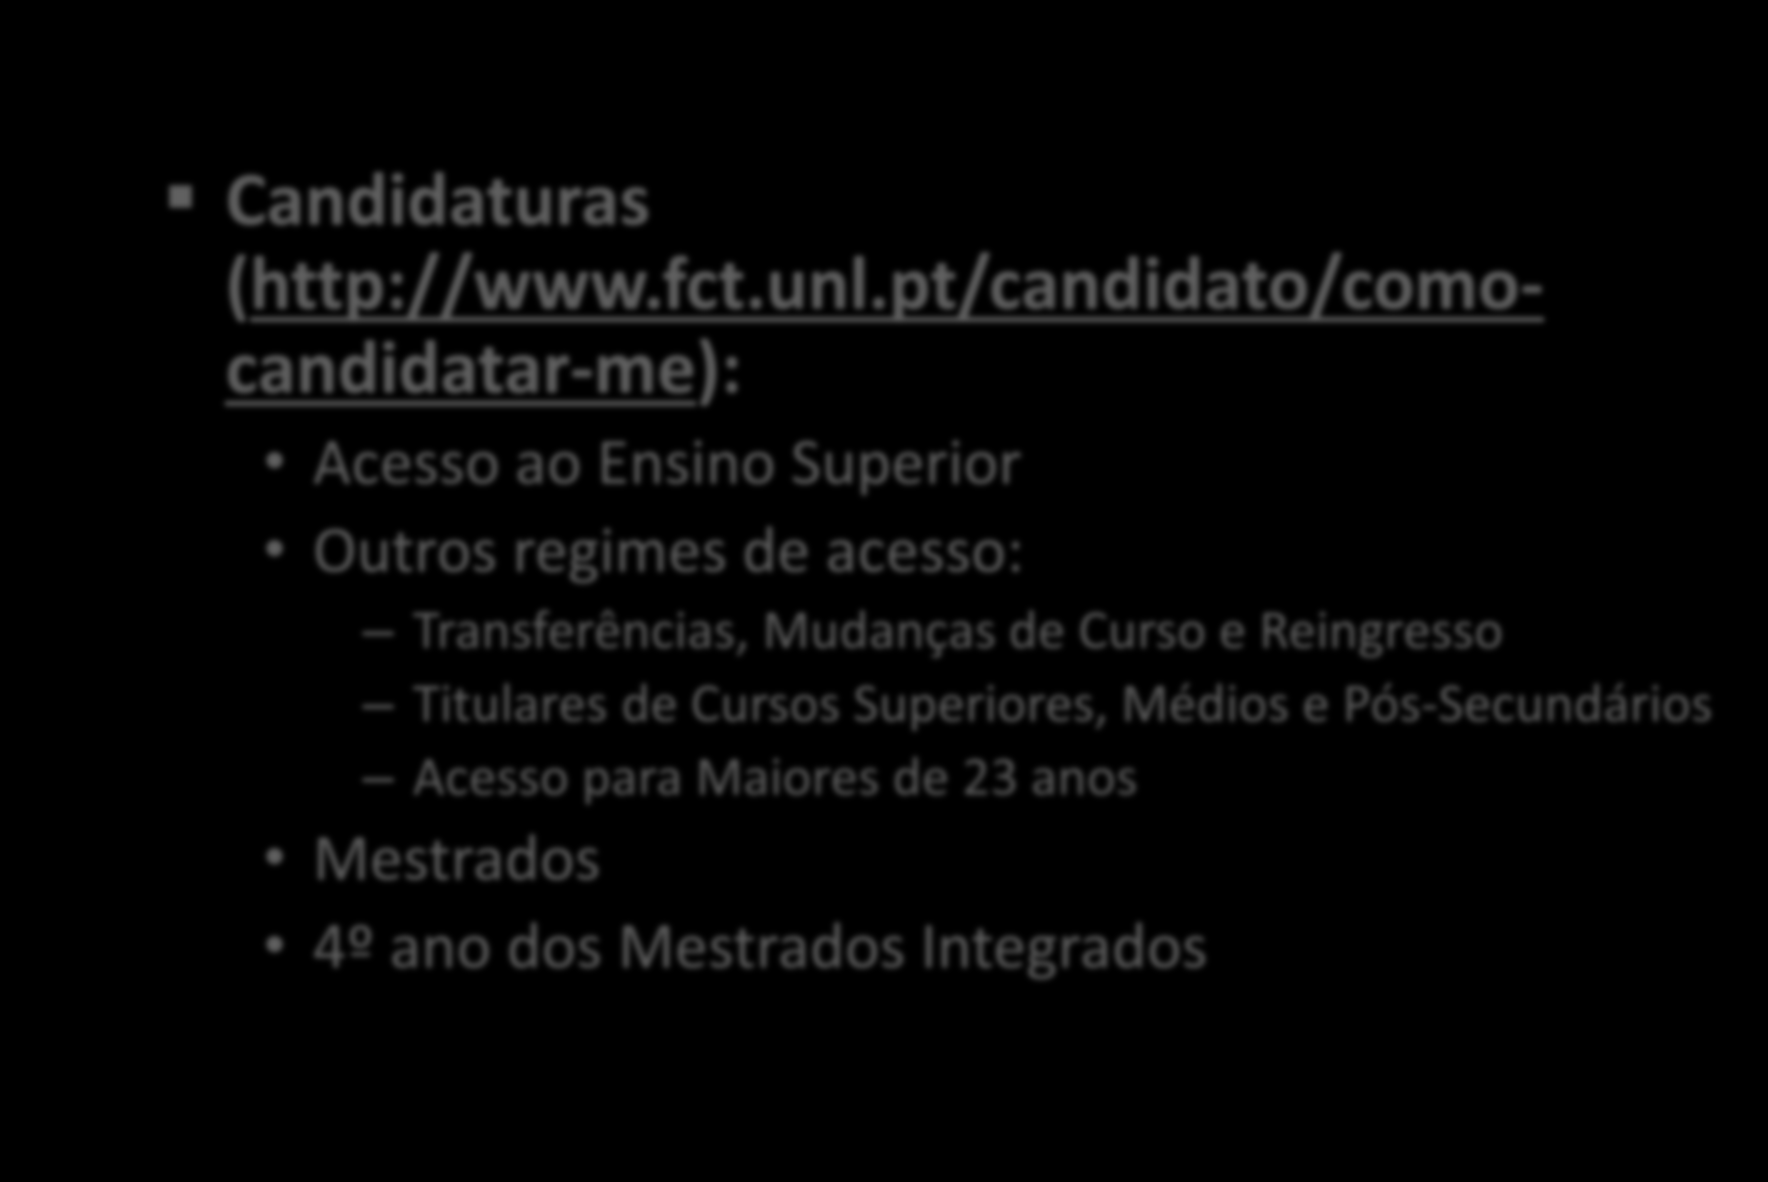 Candidaturas (http://www.fct.unl.